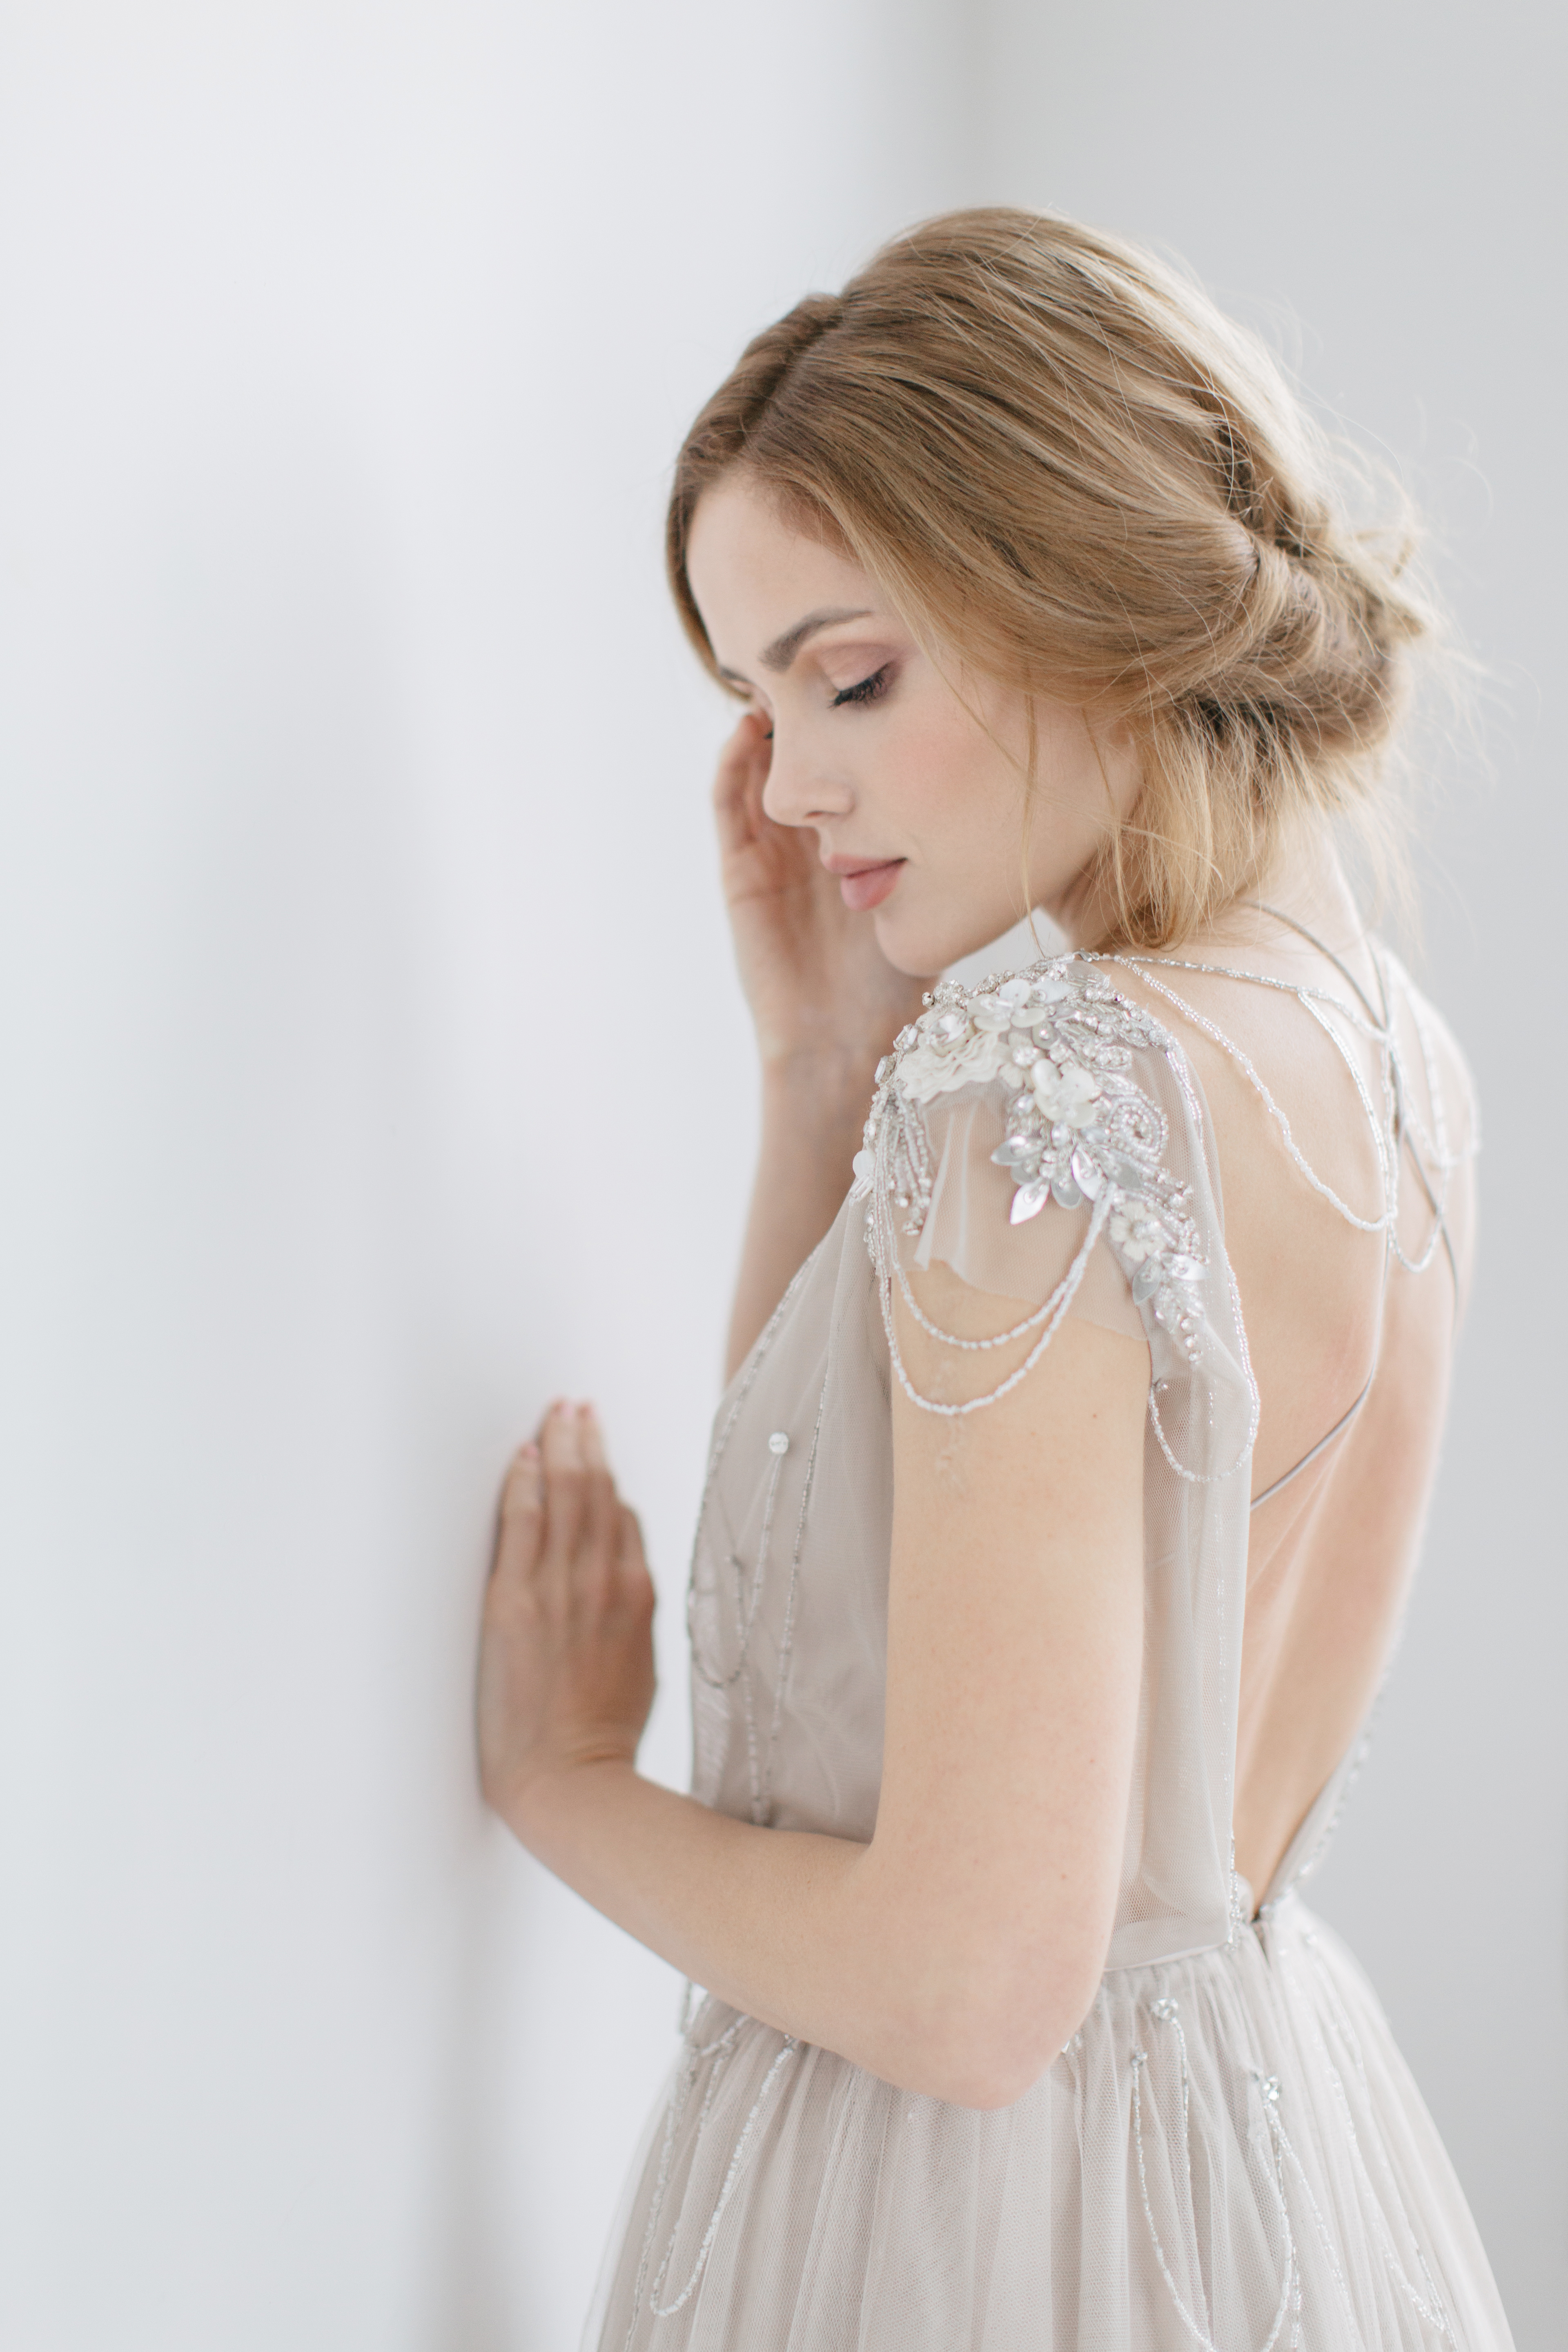 Купить свадебное платье «Иванел» Рара Авис из коллекции Веддинг Блум 2016 года в интернет-магазине «Мэри Трюфель»